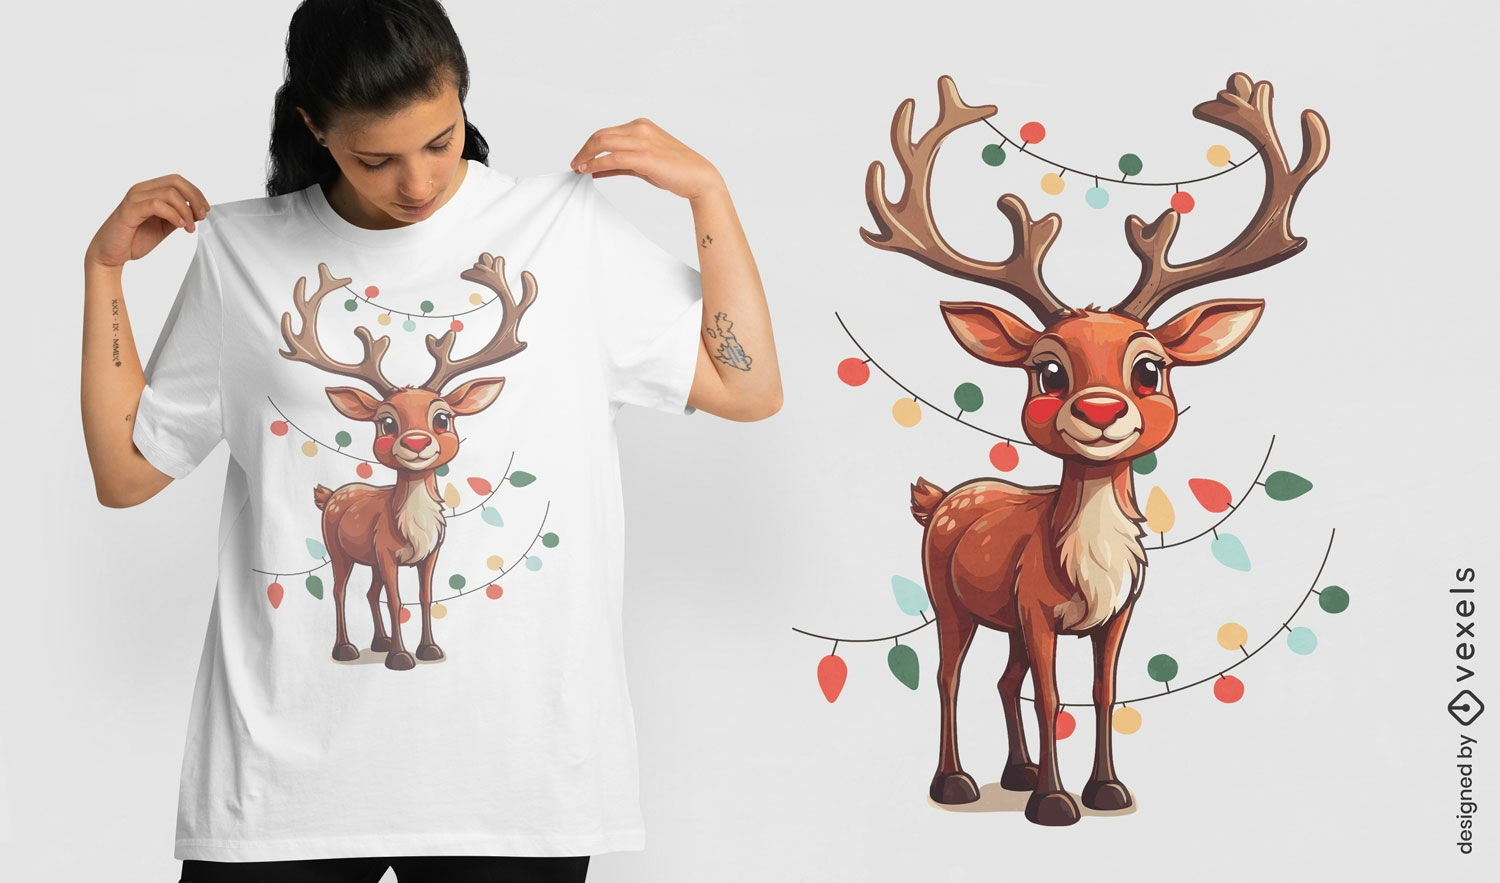 Festliches Rudolph-T-Shirt-Design